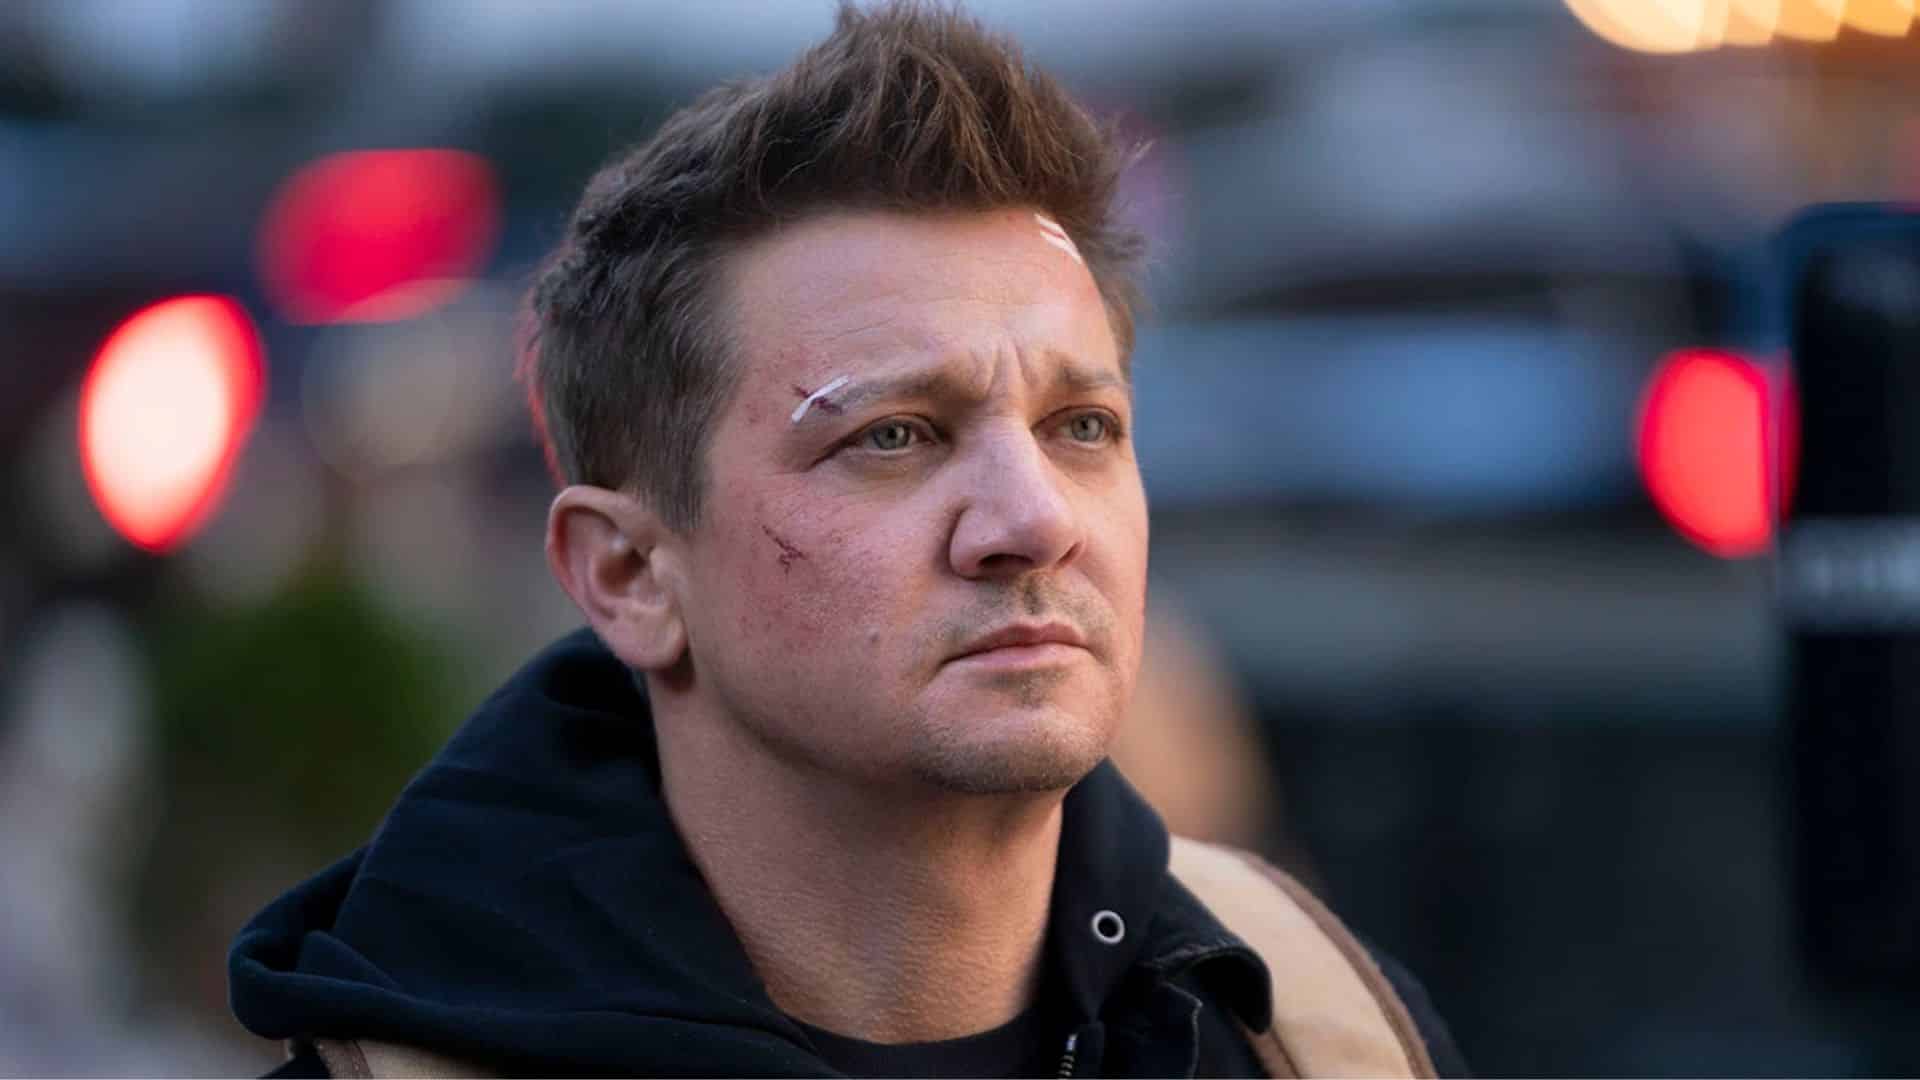 Jeremy Renner: Ator da Marvel divulga vídeo atualizando seu estado de saúde após acidente